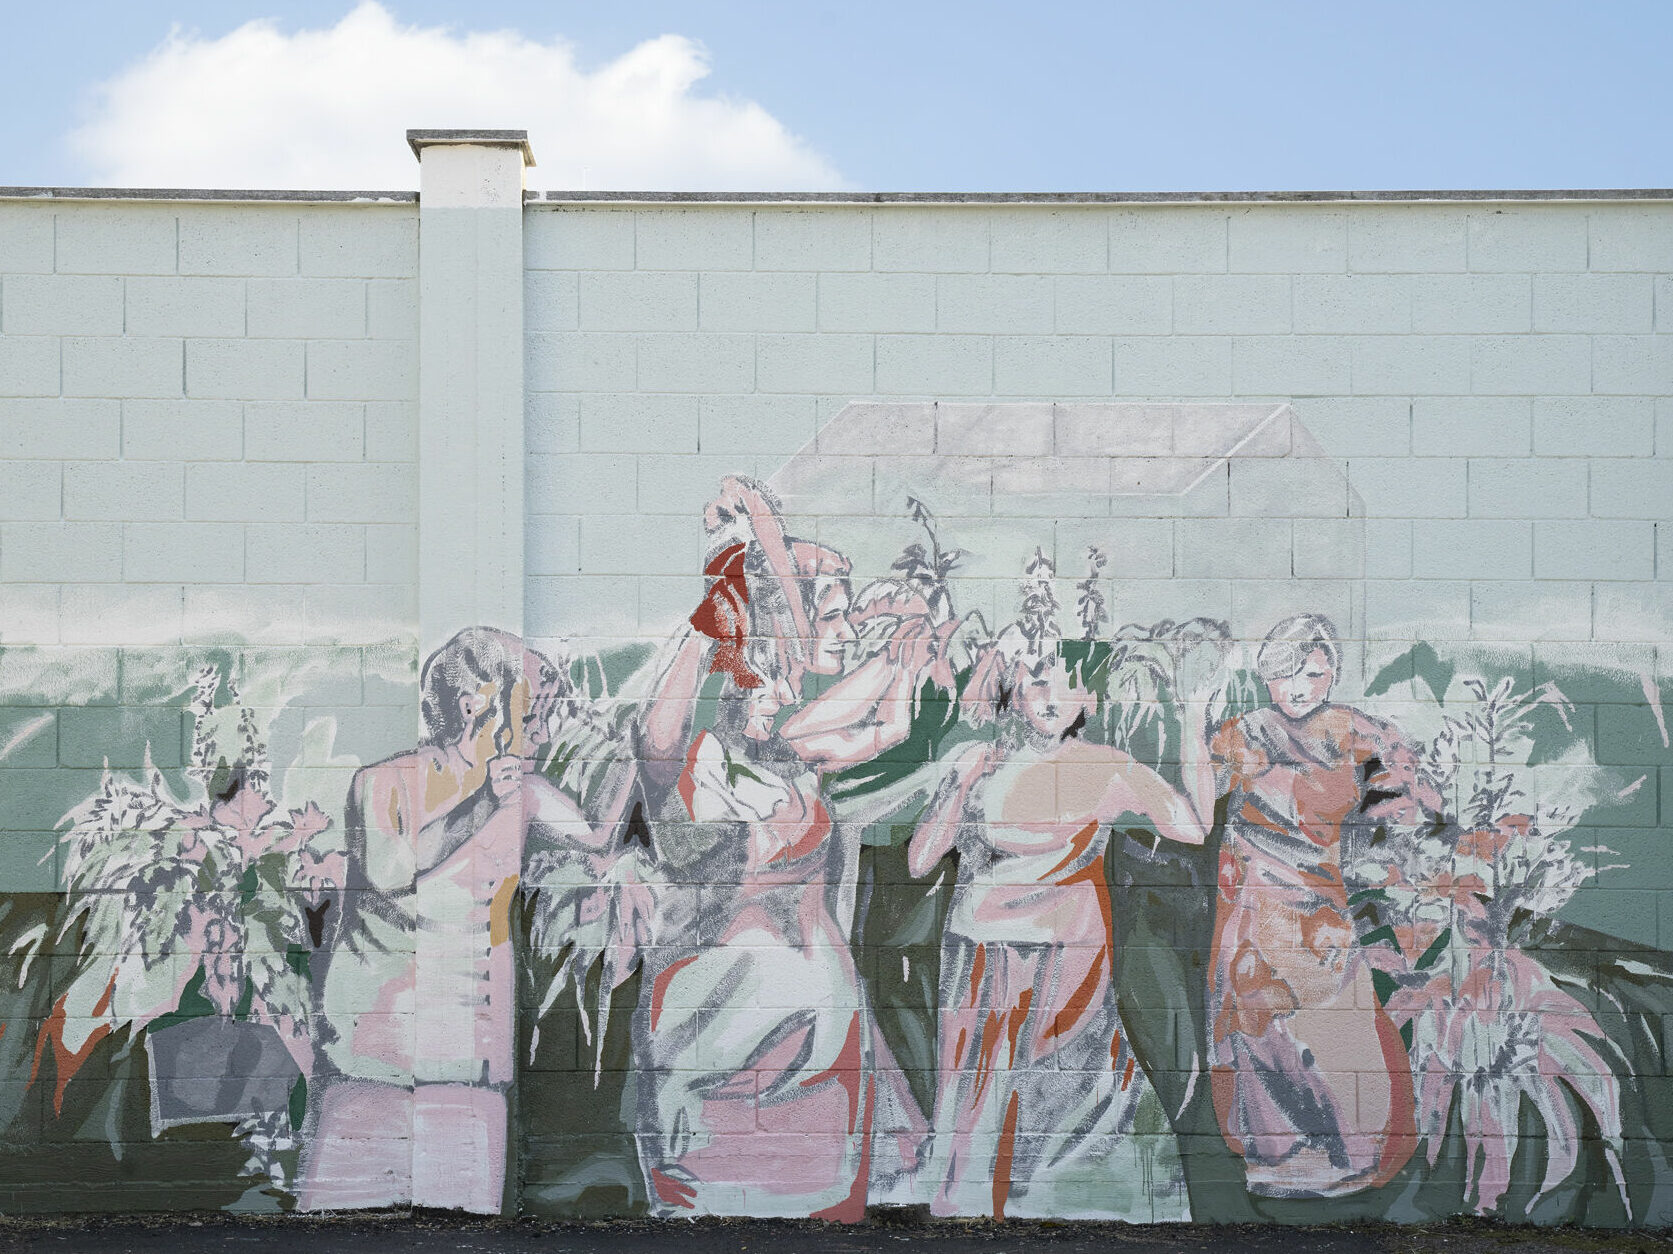 Coloriamo i muri! Il murale di Donna Moderna